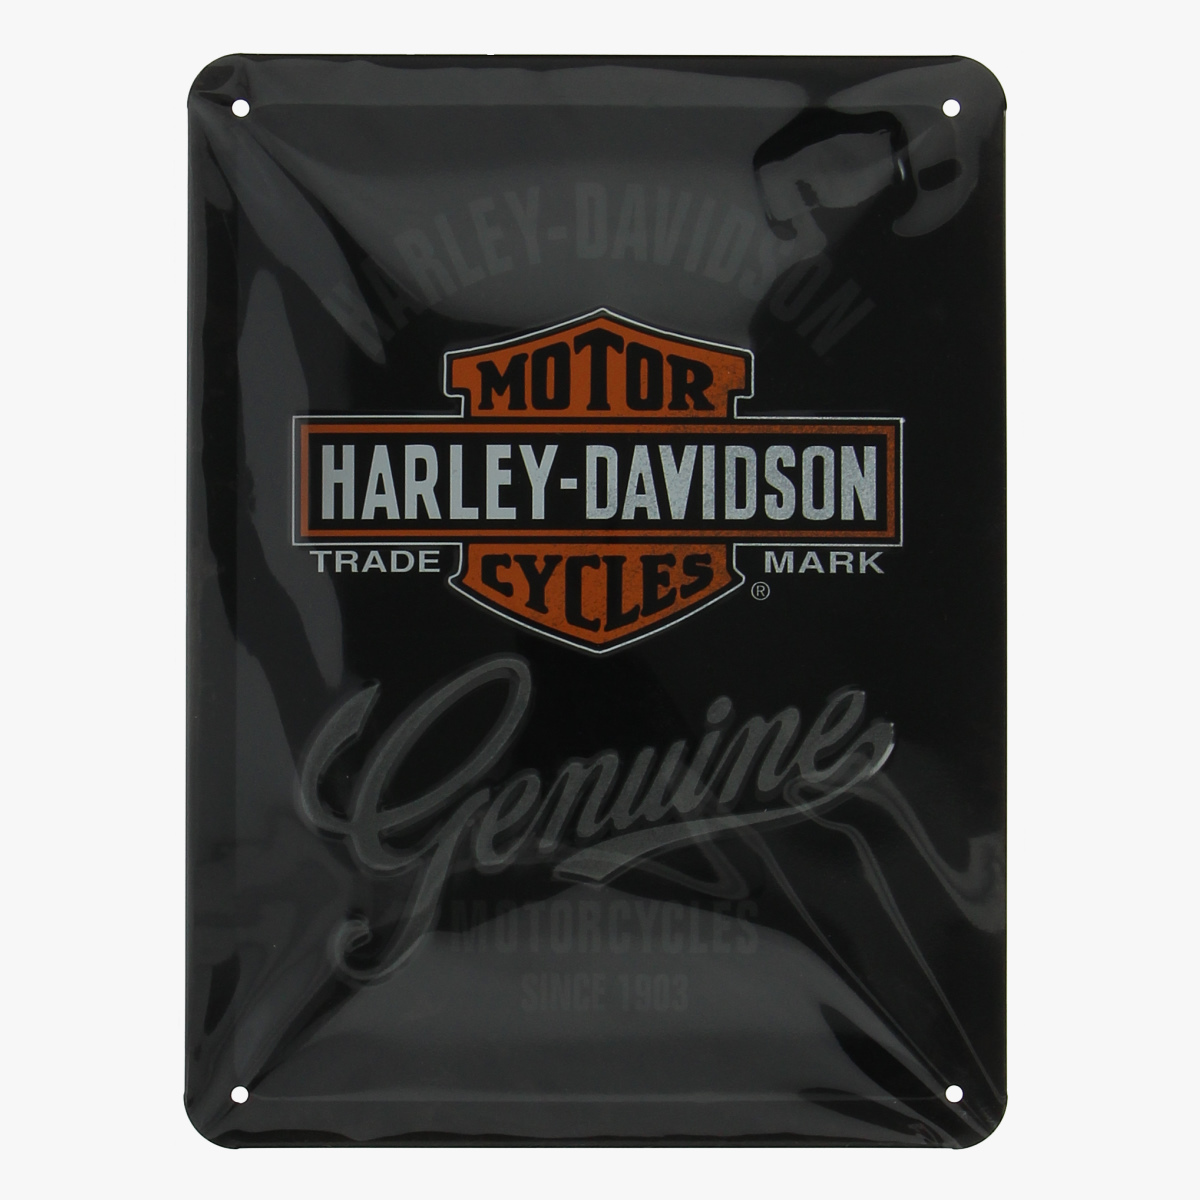 Afbeeldingen van blikken bordje Harley-Davidson Genuine repro